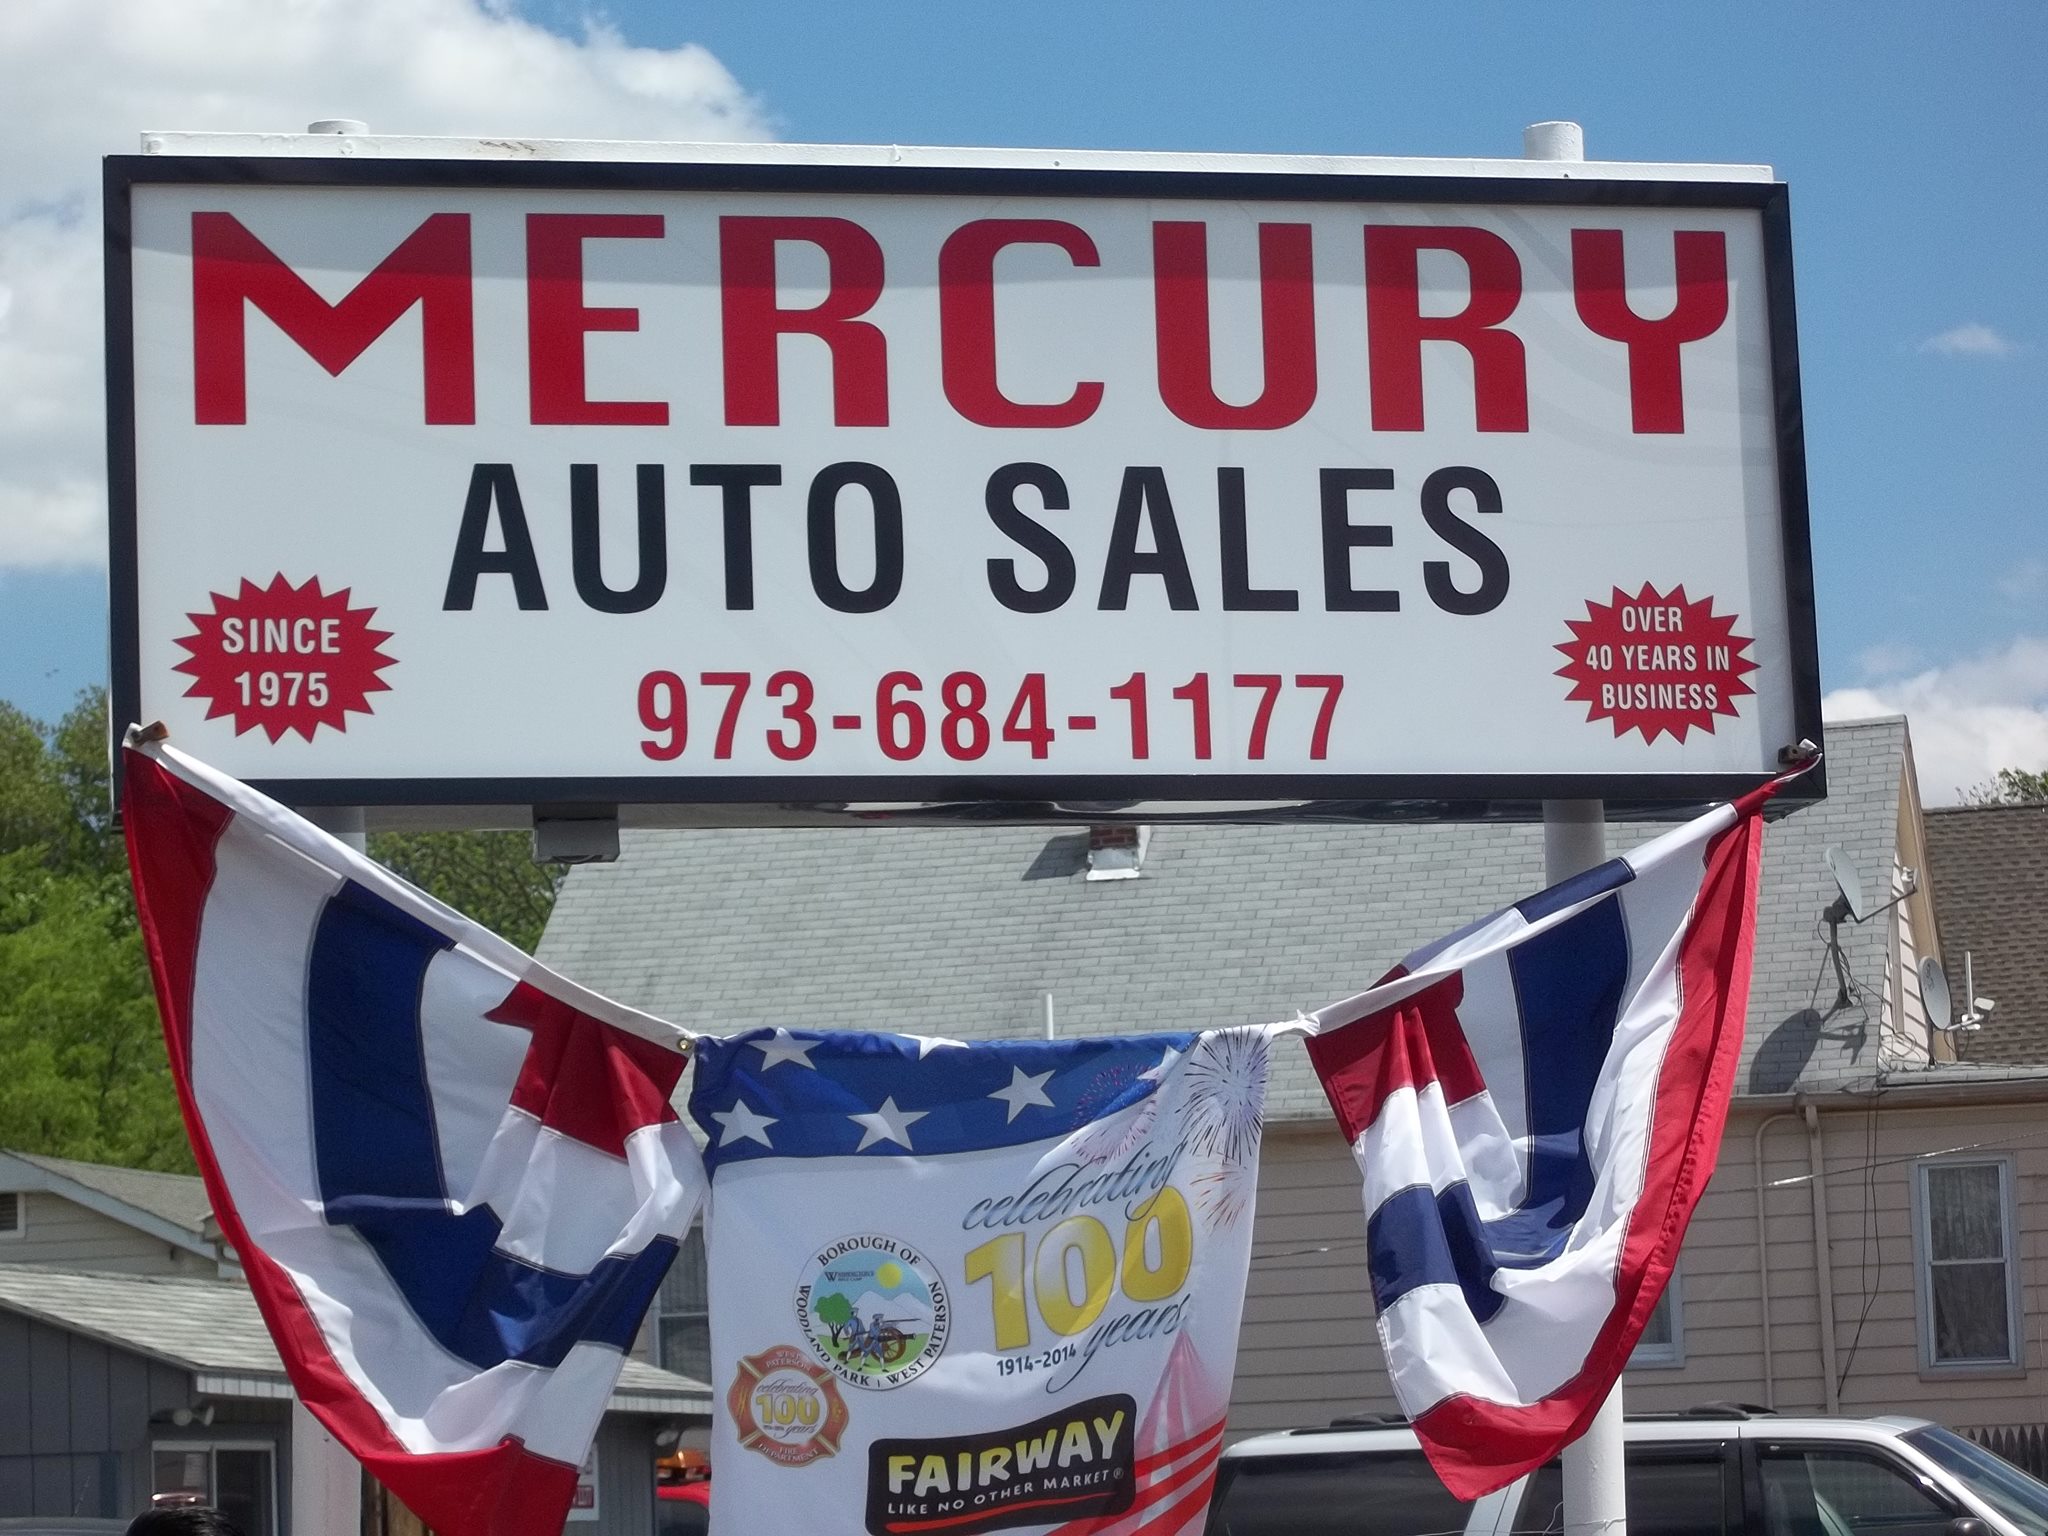 Mercury Auto Sales